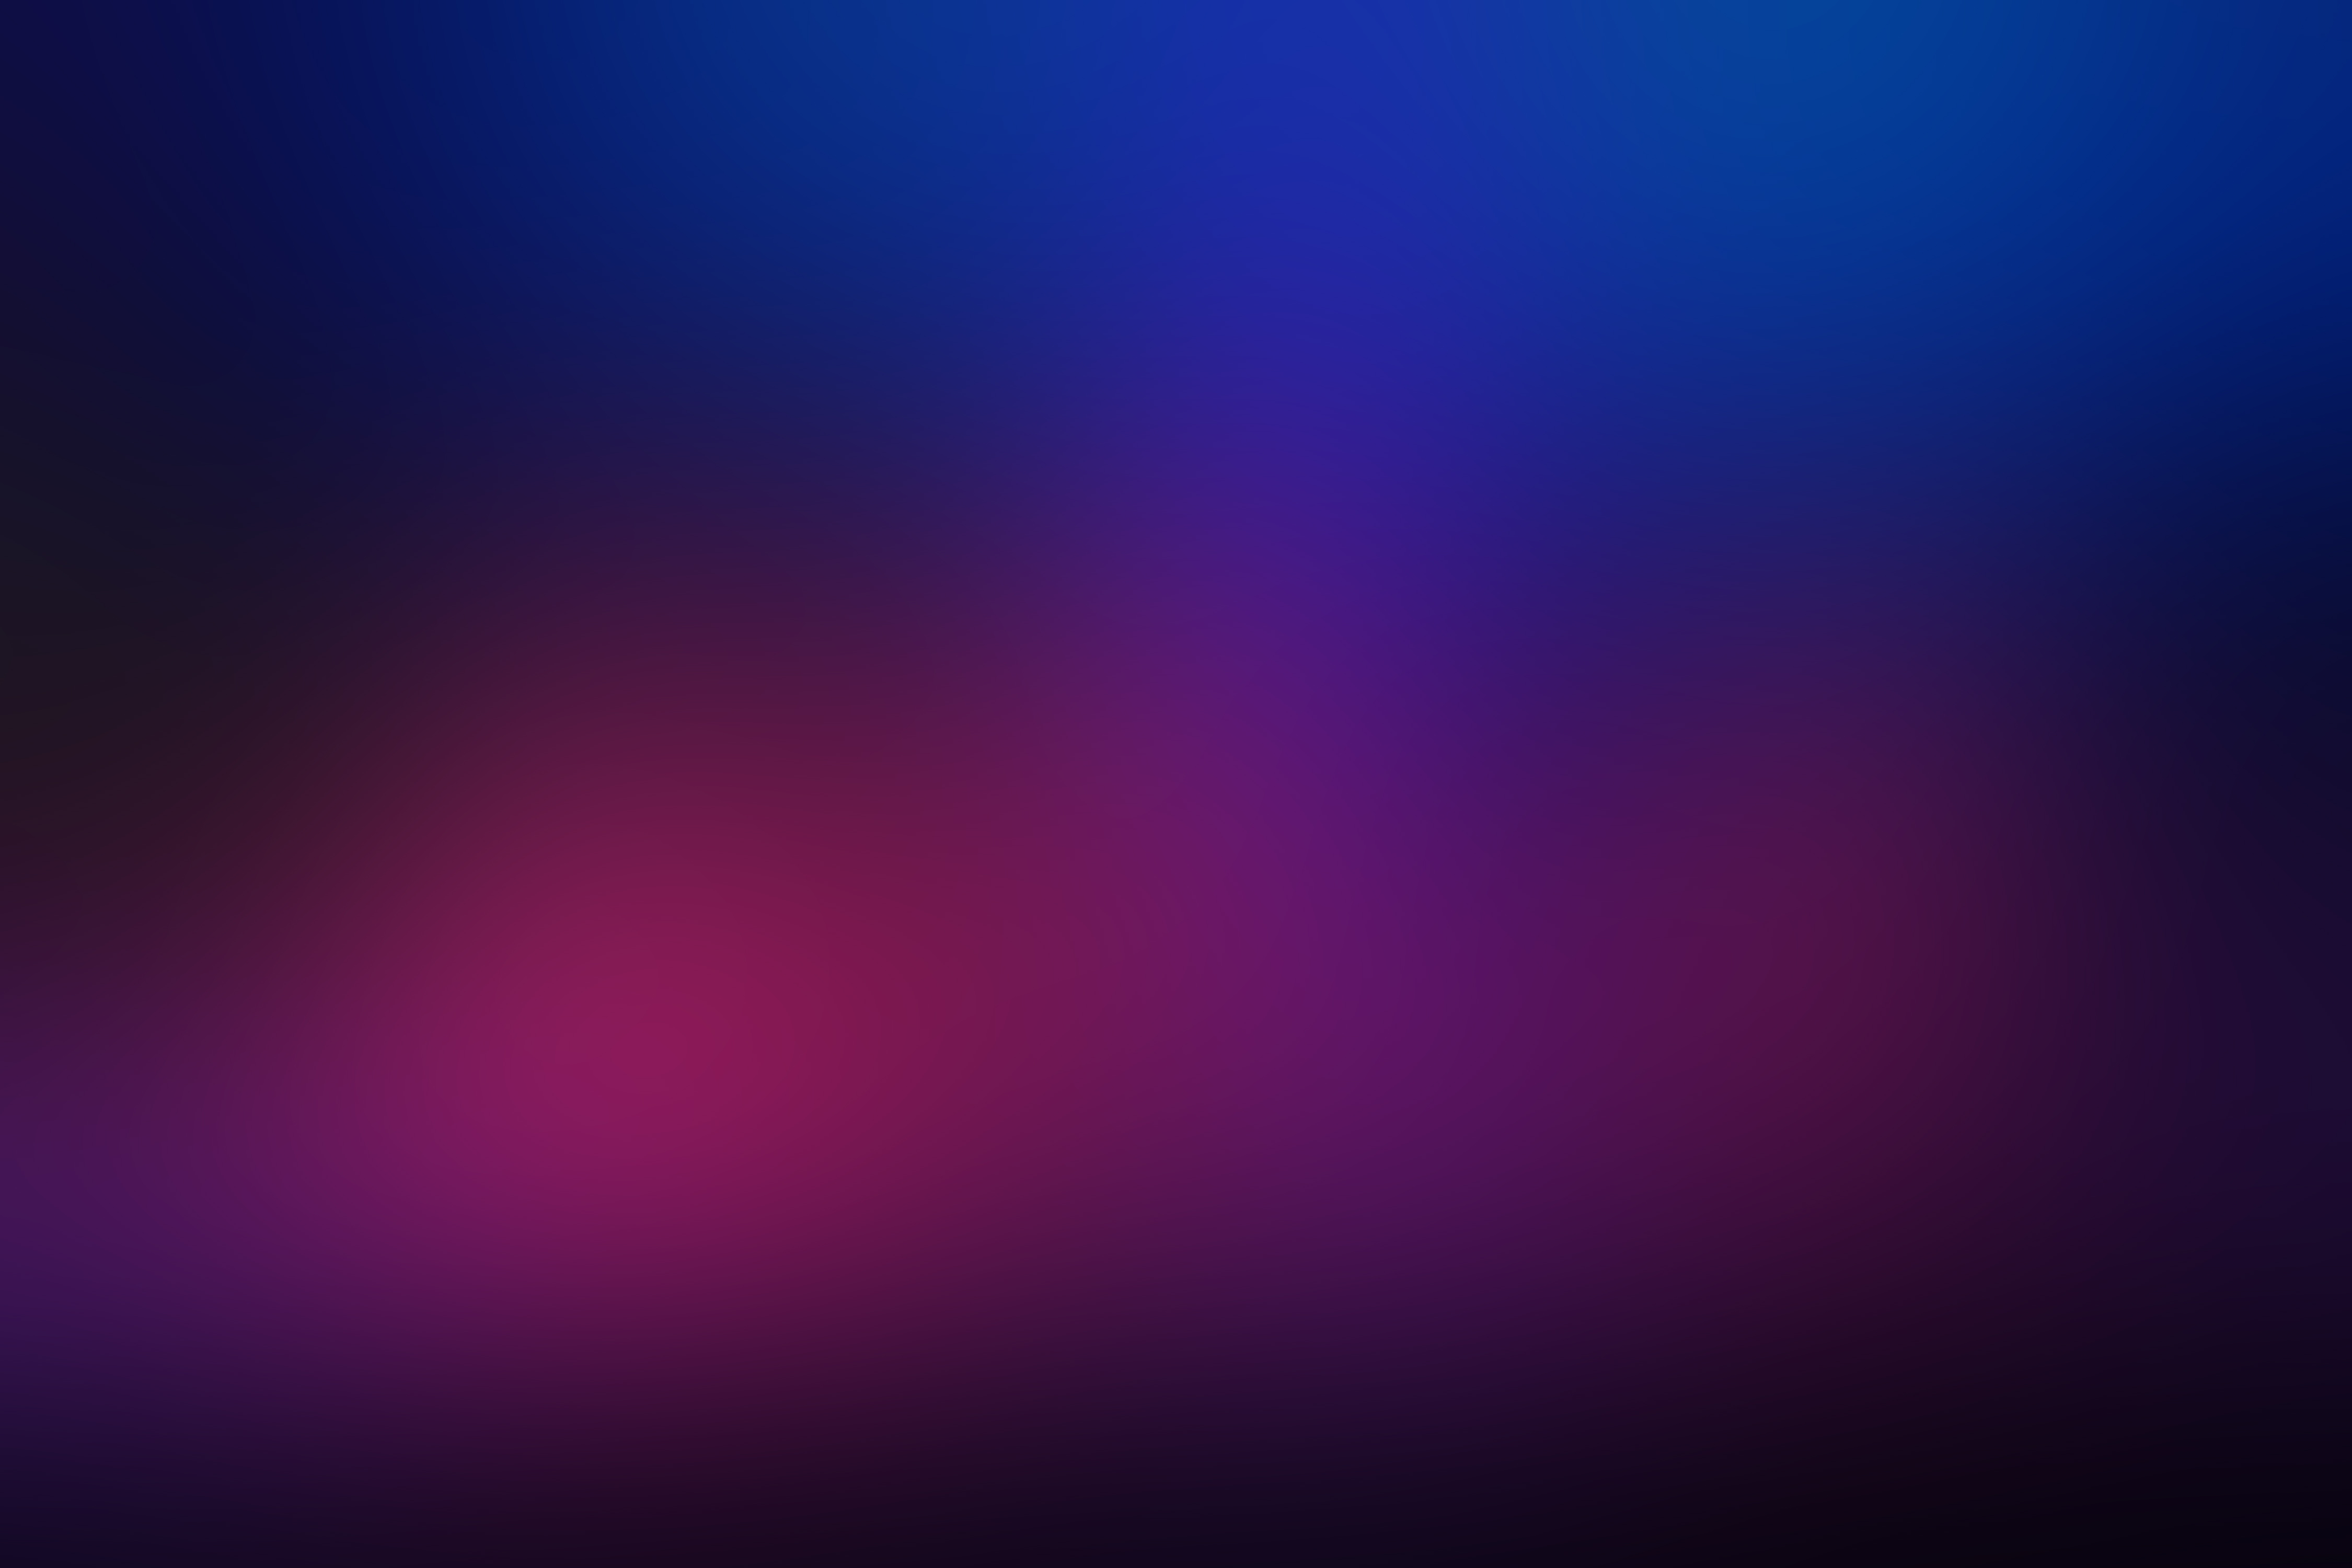 club blurred background